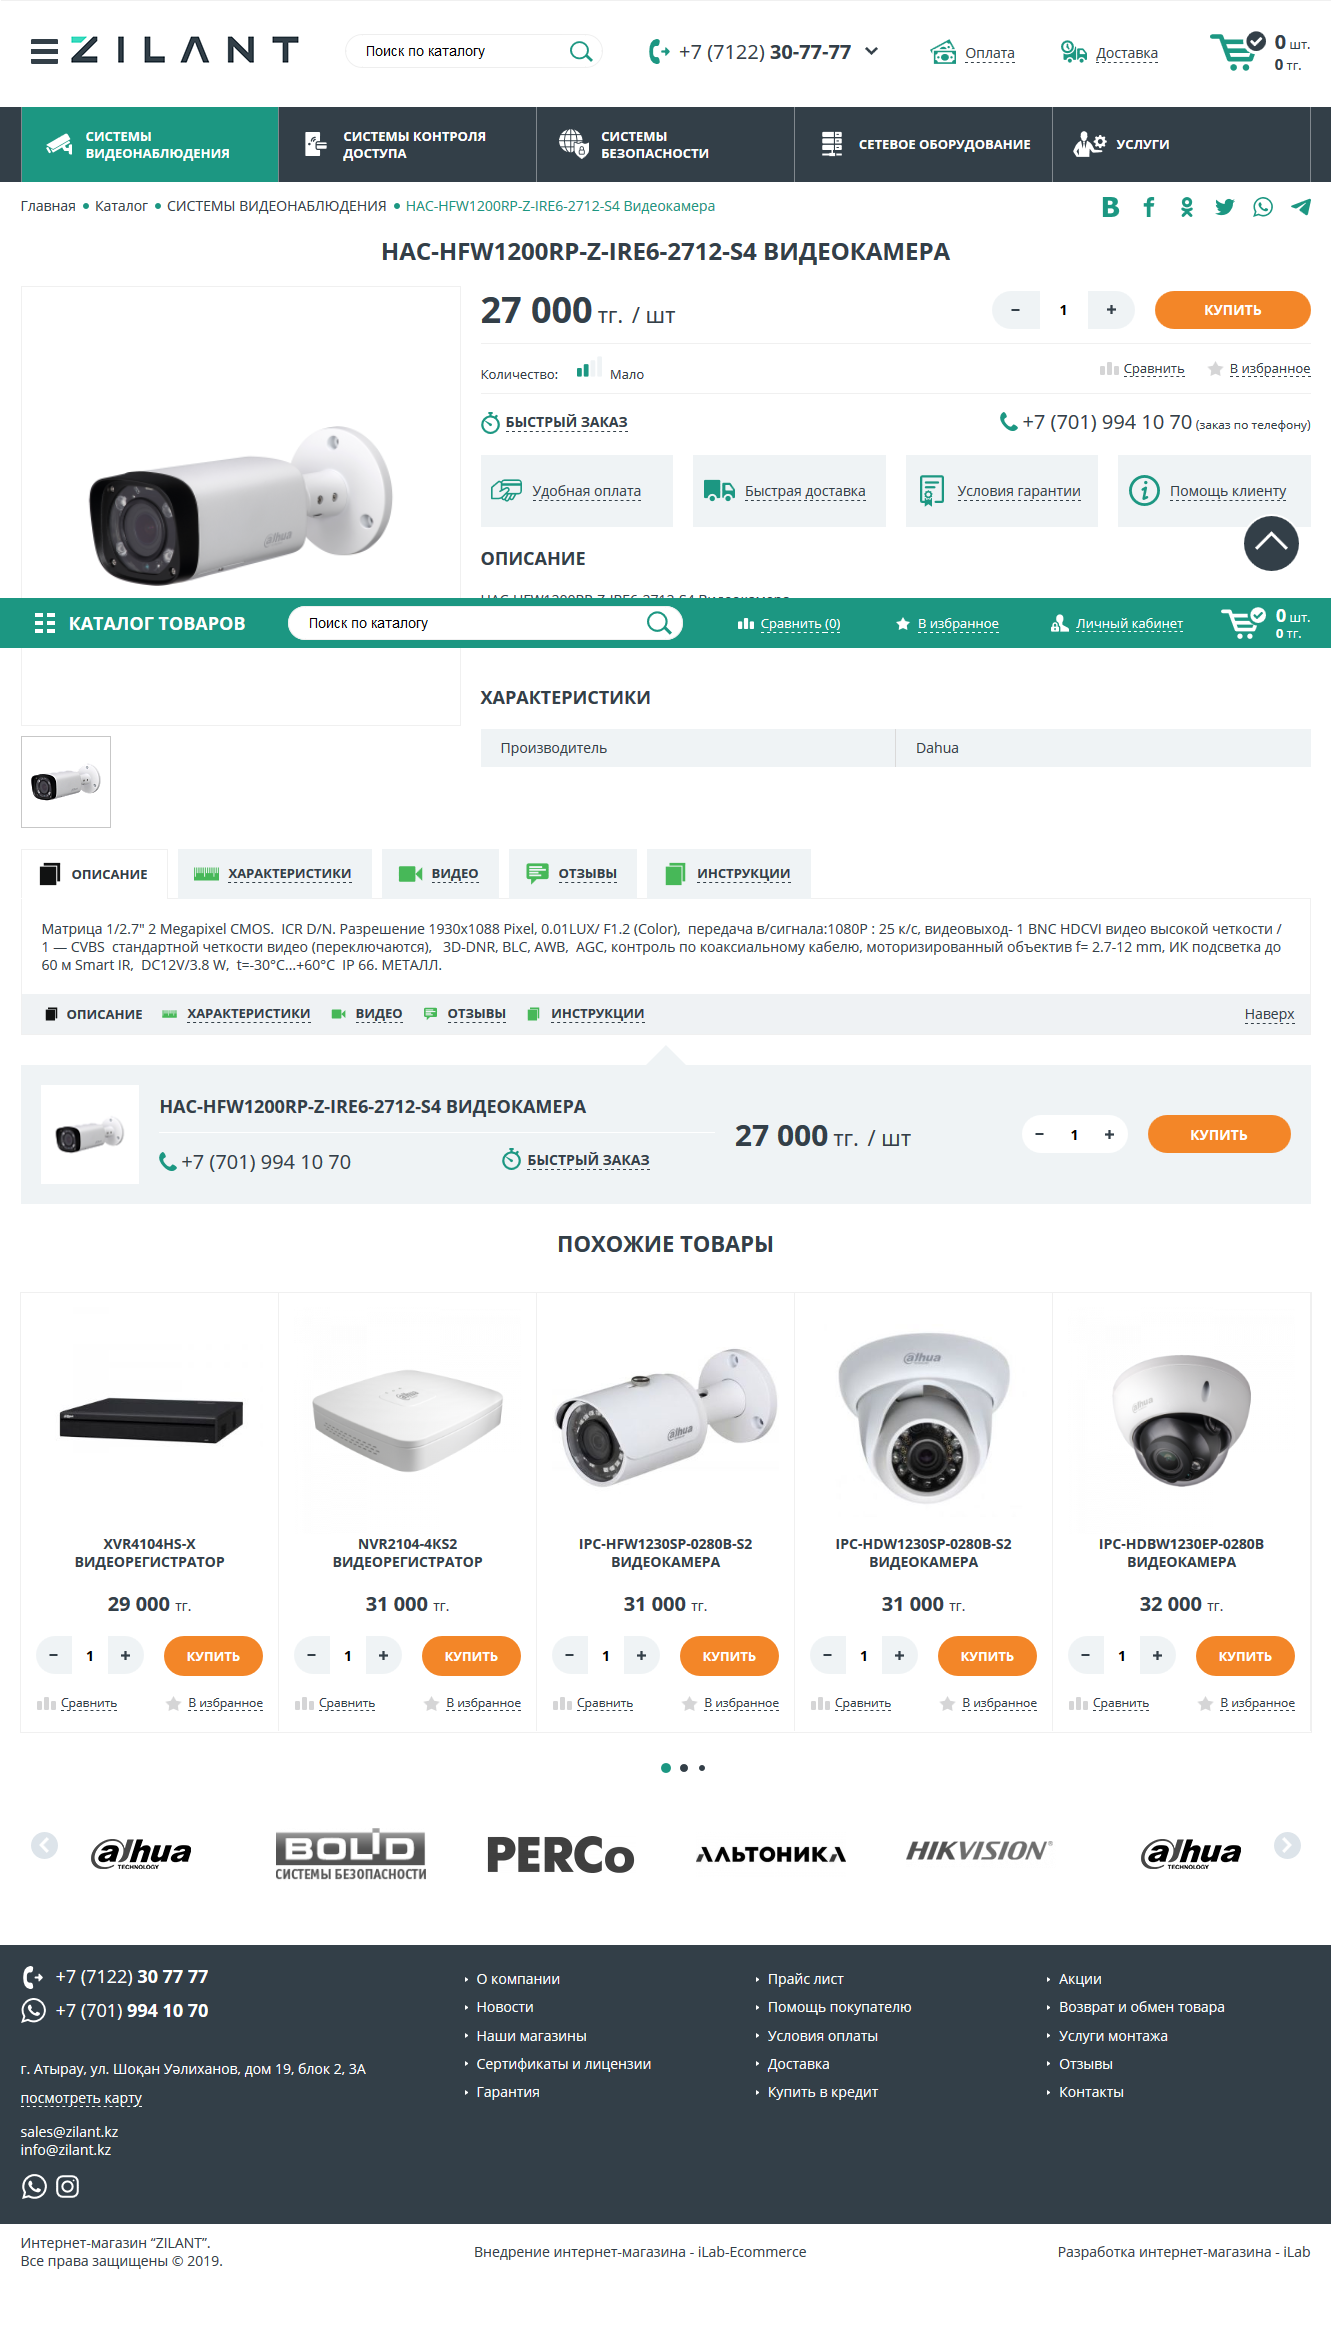 интернет-магазин систем видеонаблюдения, систем контроля доступом, систем безопасности - zilant.kz